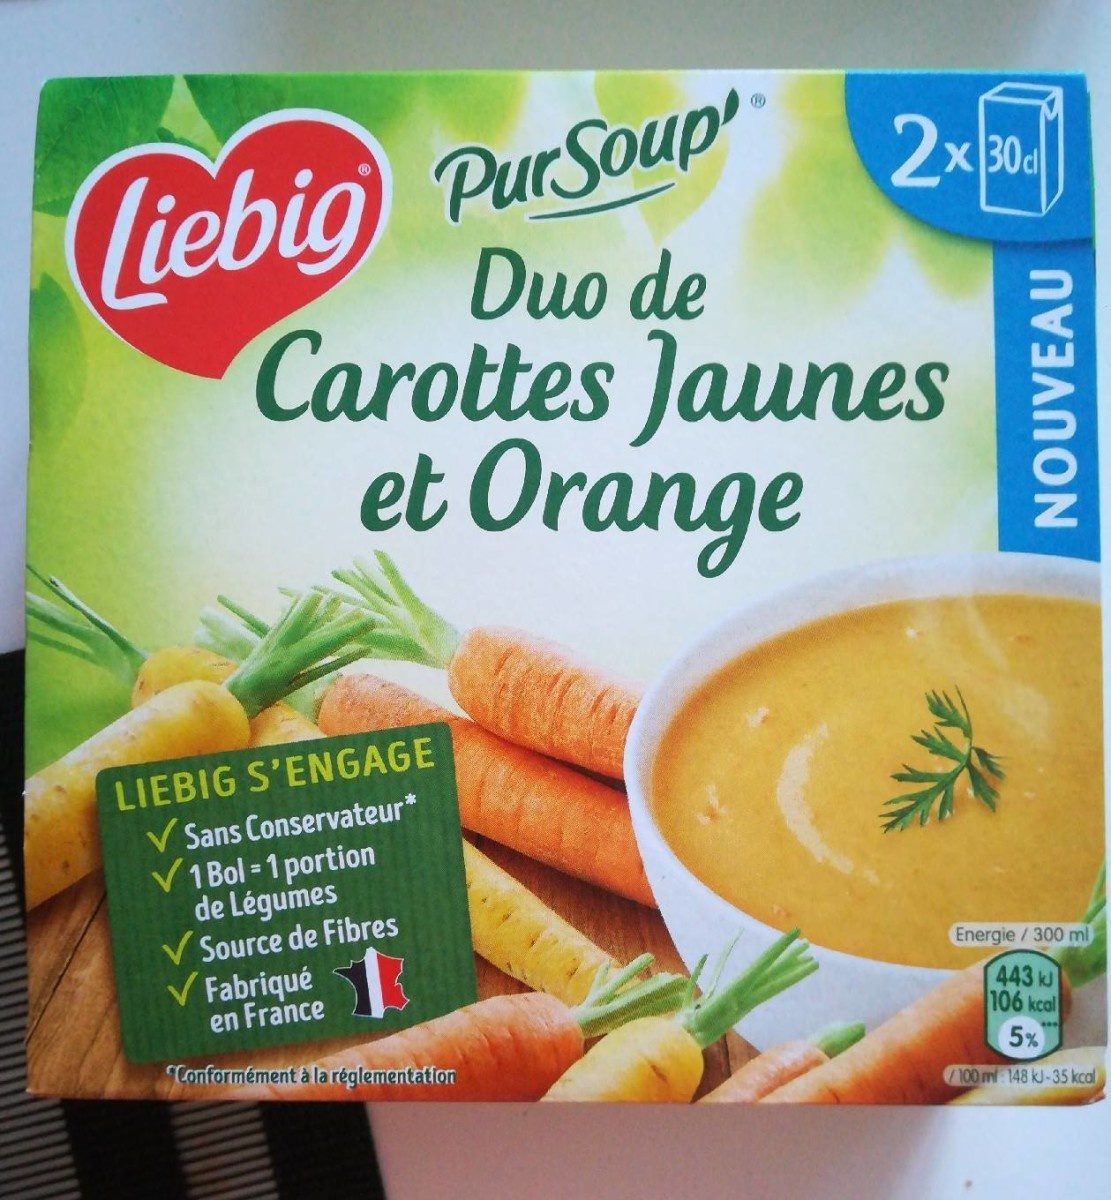 PurSoup' - Duo de Carottes Jaunes et Orange - Producto - fr